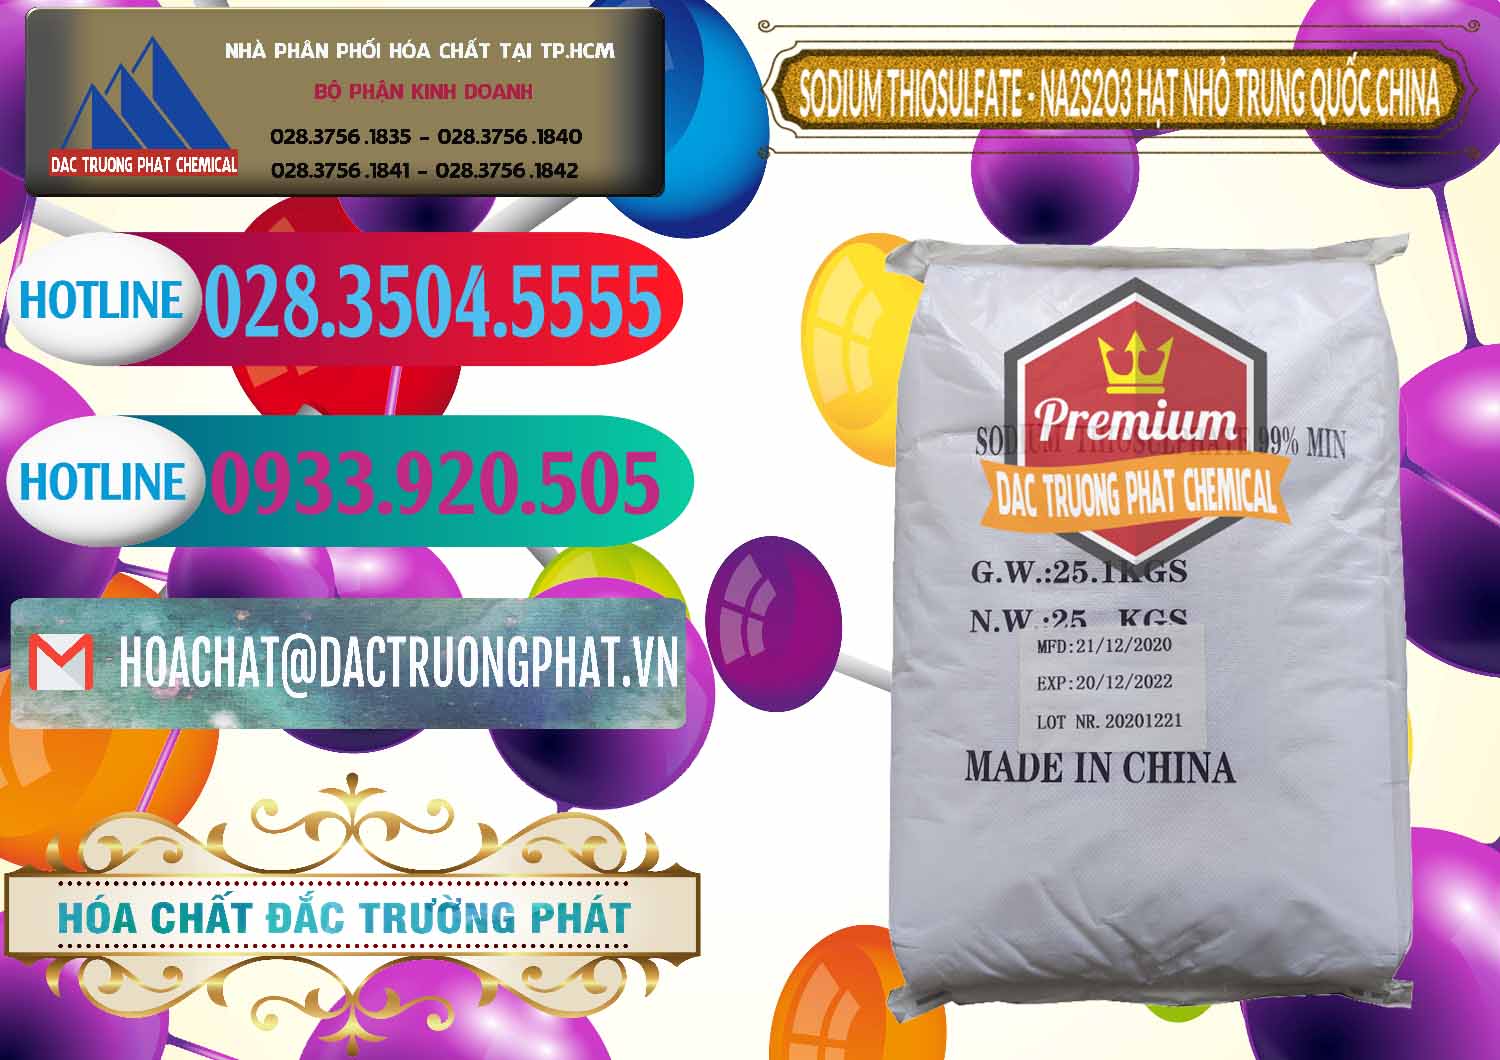 Nơi chuyên phân phối và bán Sodium Thiosulfate - NA2S2O3 Hạt Nhỏ Trung Quốc China - 0204 - Chuyên cung cấp và nhập khẩu hóa chất tại TP.HCM - truongphat.vn